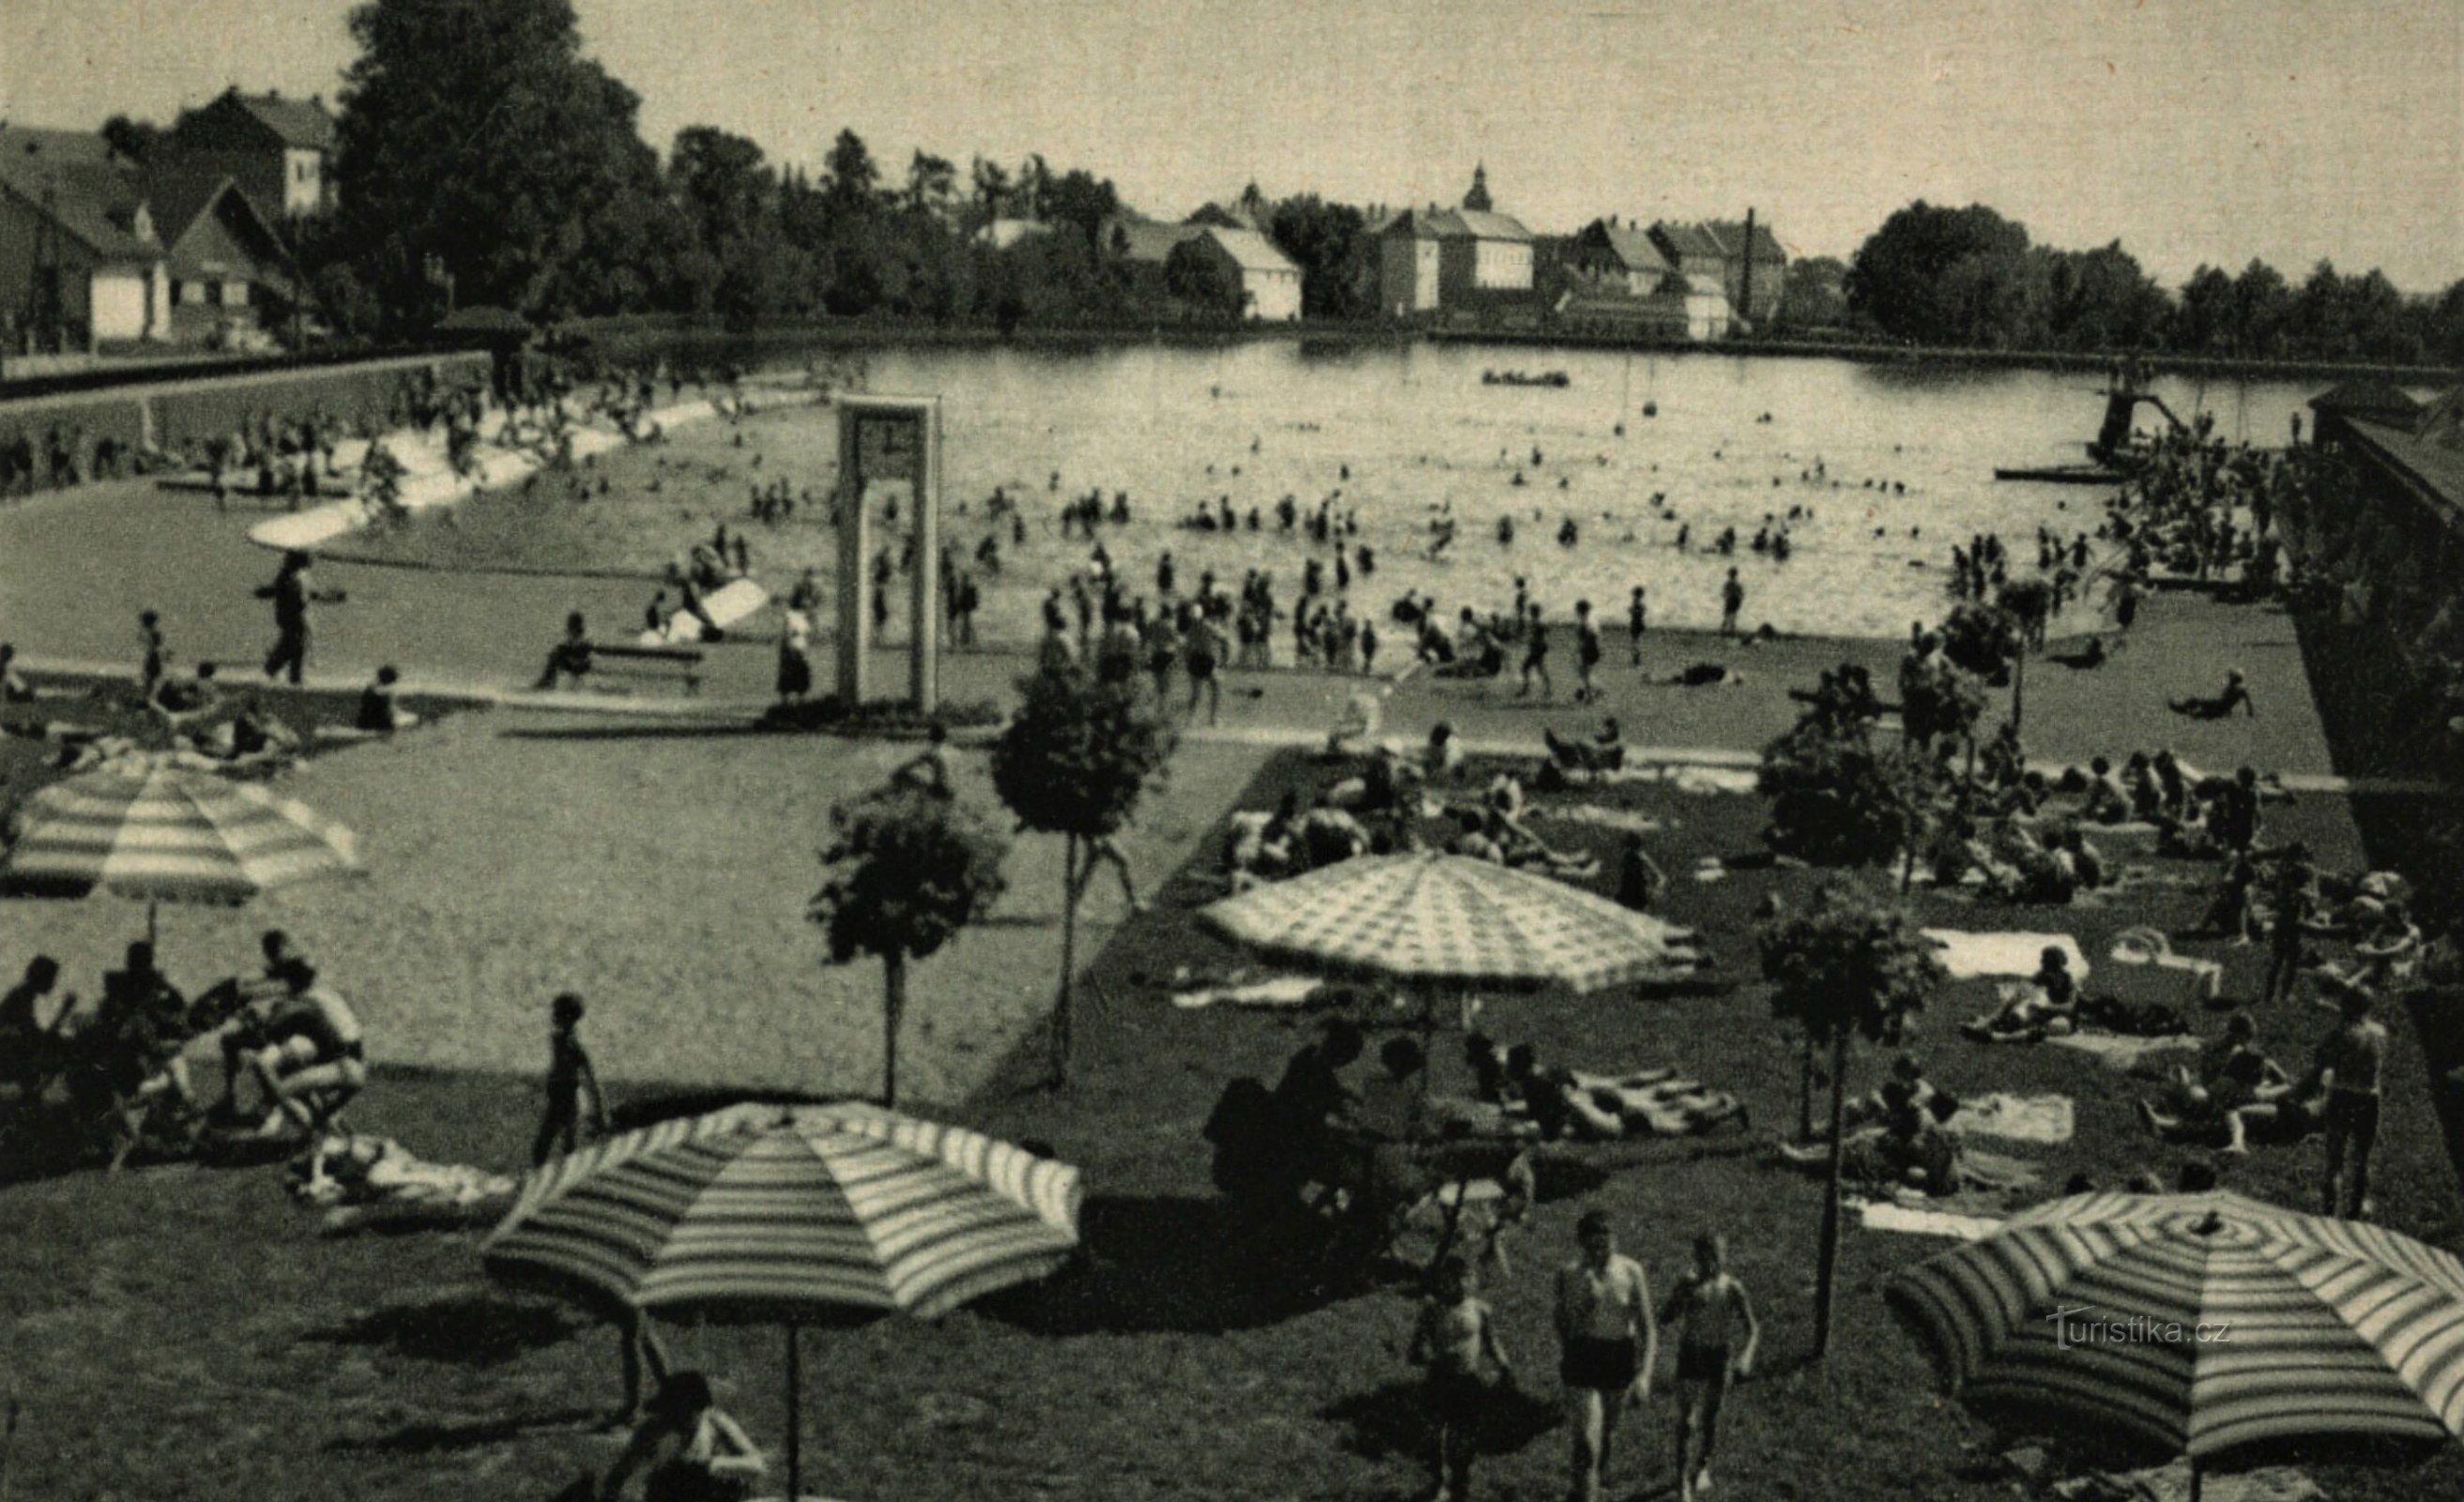 A piscina na lagoa Knížete em Jičín antes de 1935